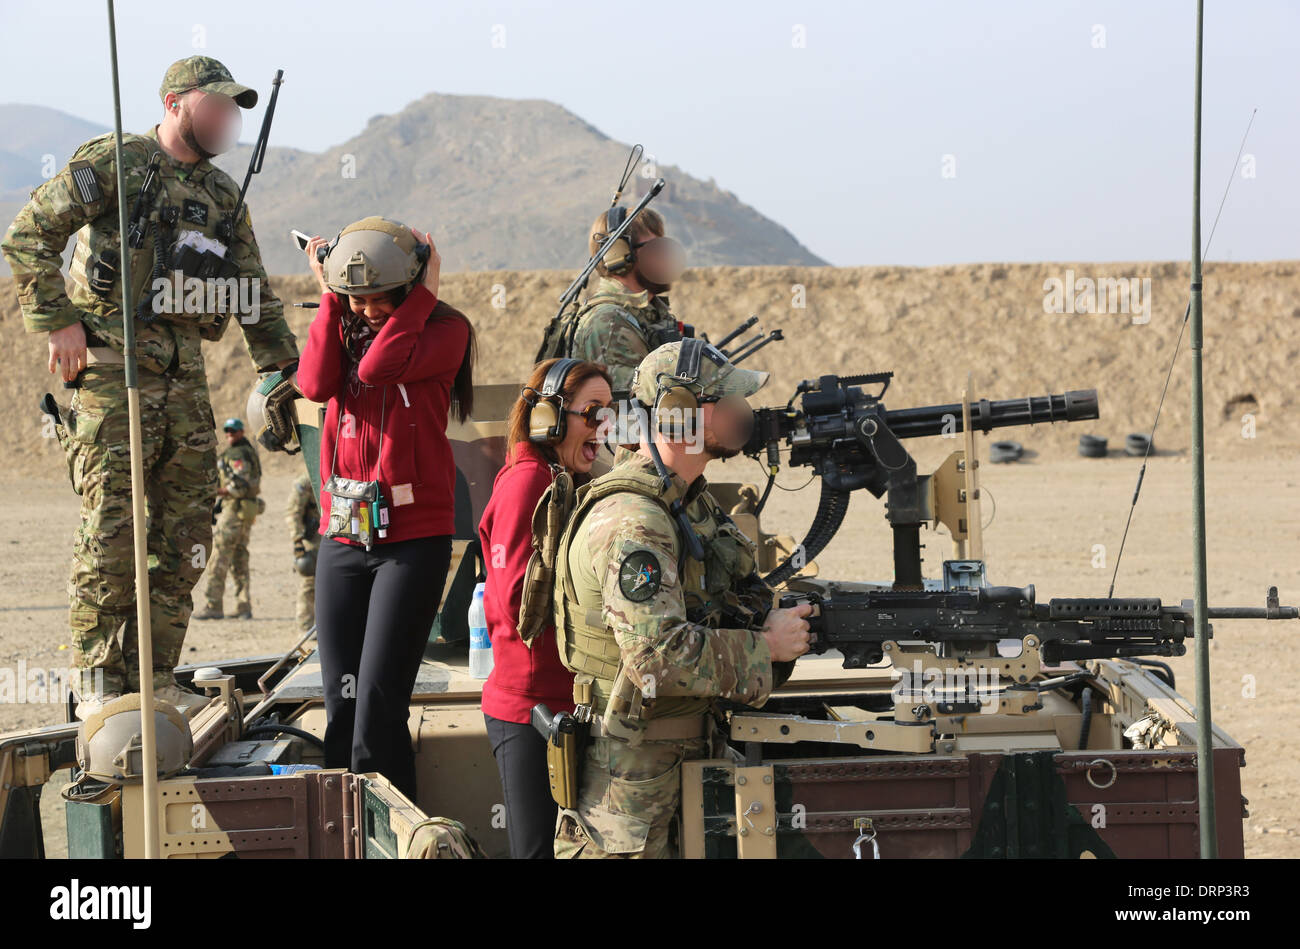 US Army Special Forces Soldaten zeigen verschiedene Waffensysteme zu Washington Redskins Fußball Team Cheerleader während einer militärischen Wertschätzung Tour 24. Januar 2014 in der Nähe von Kabul, Afghanistan. Teile des Bildes sind aus Sicherheitsgründen vom Militär fließend. Stockfoto